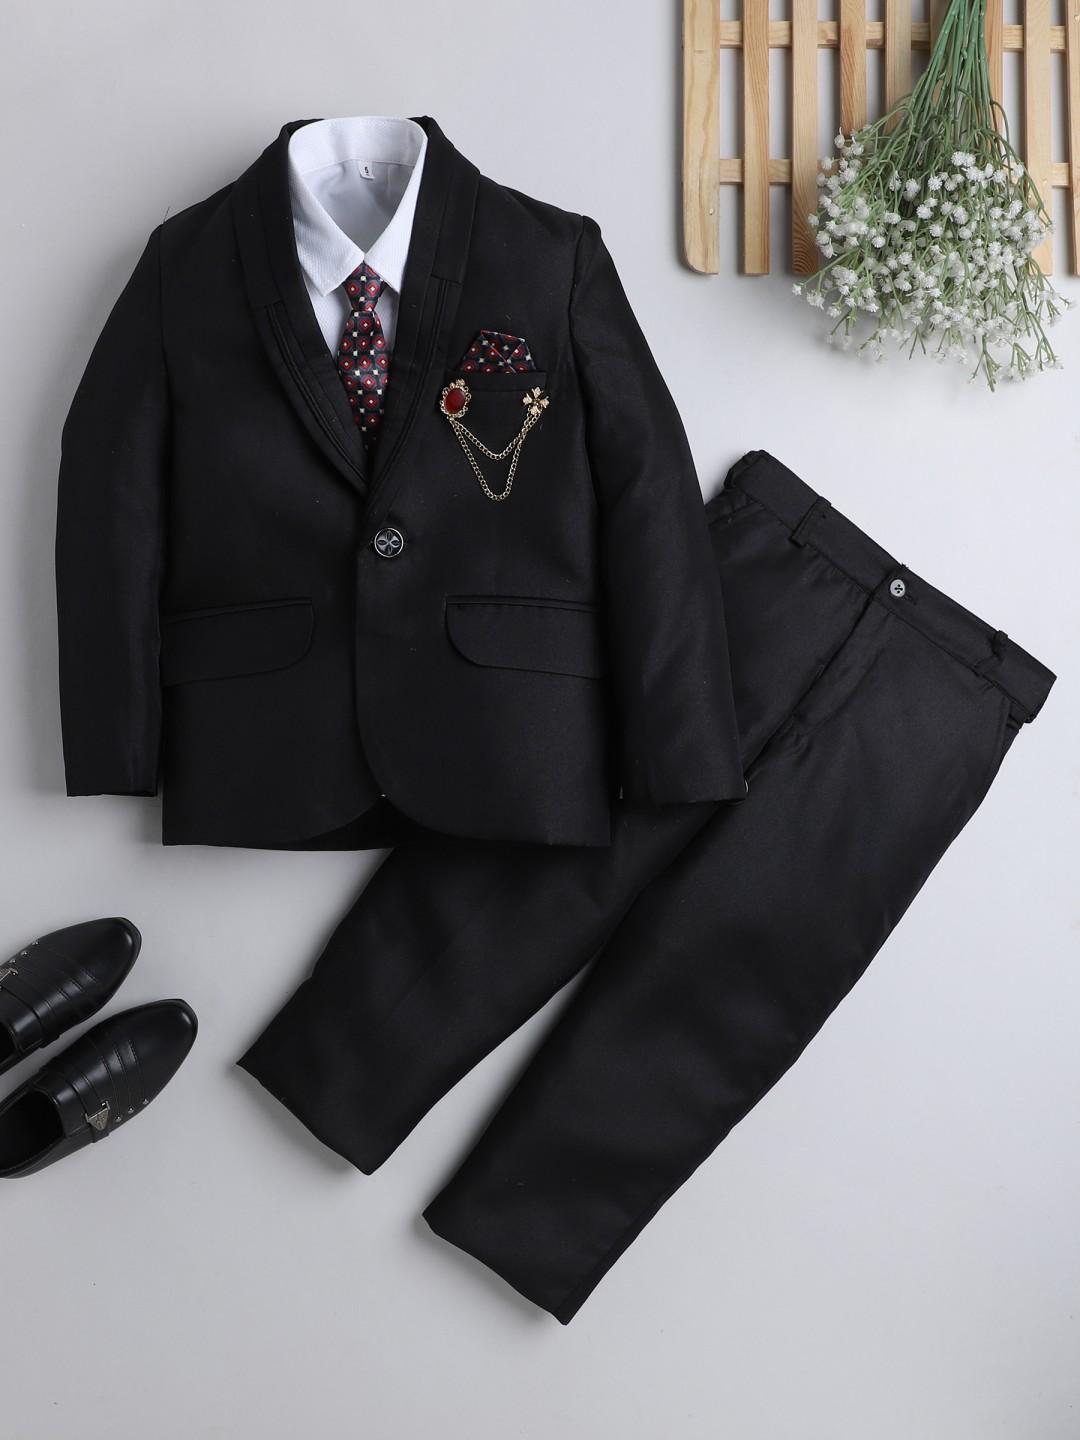 dkgf fashion boys black 4-piece suit